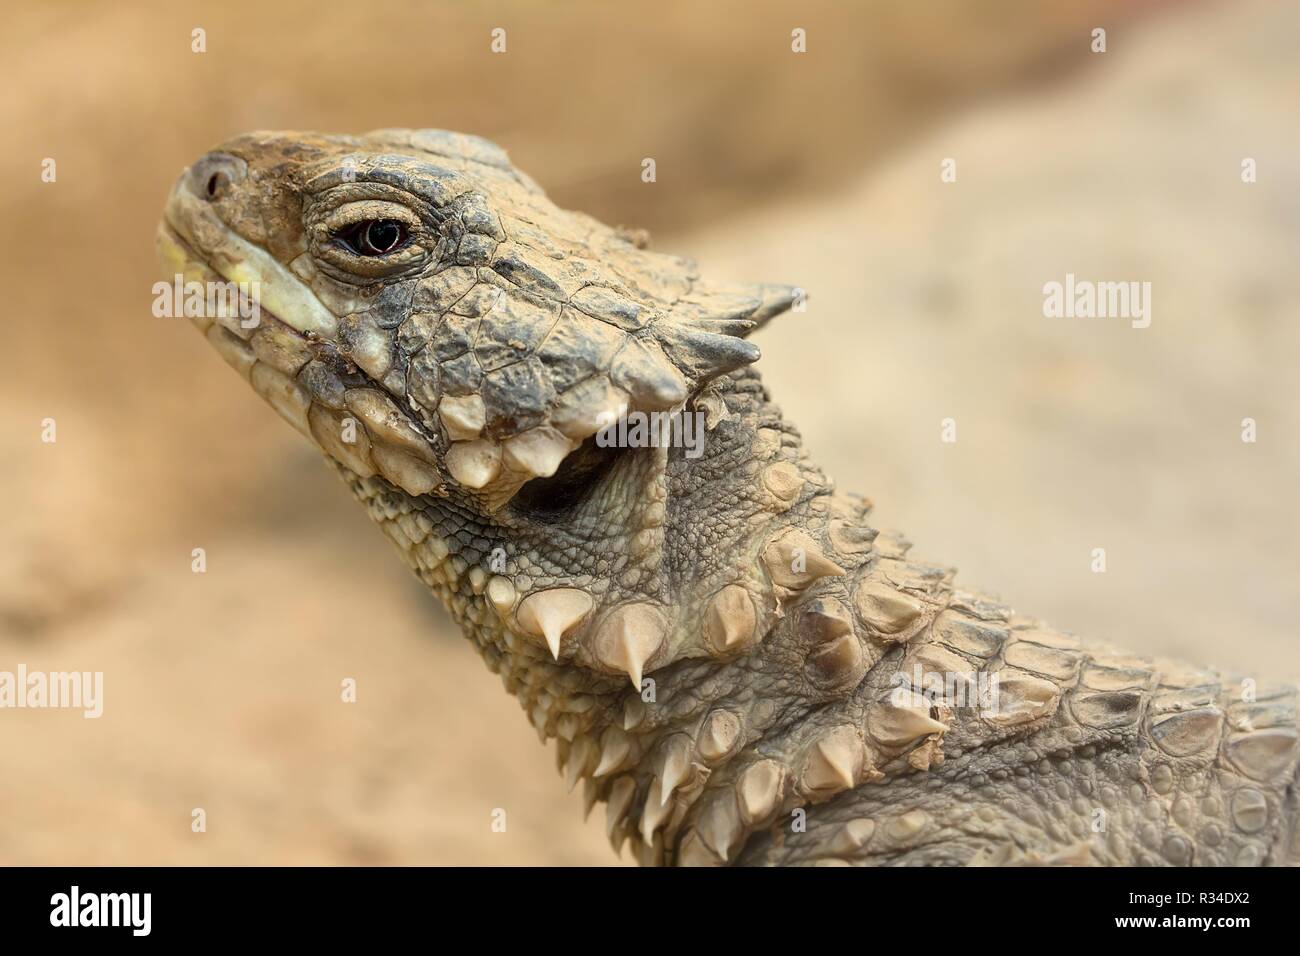 giant girdled lizard / sungazer Stock Photo